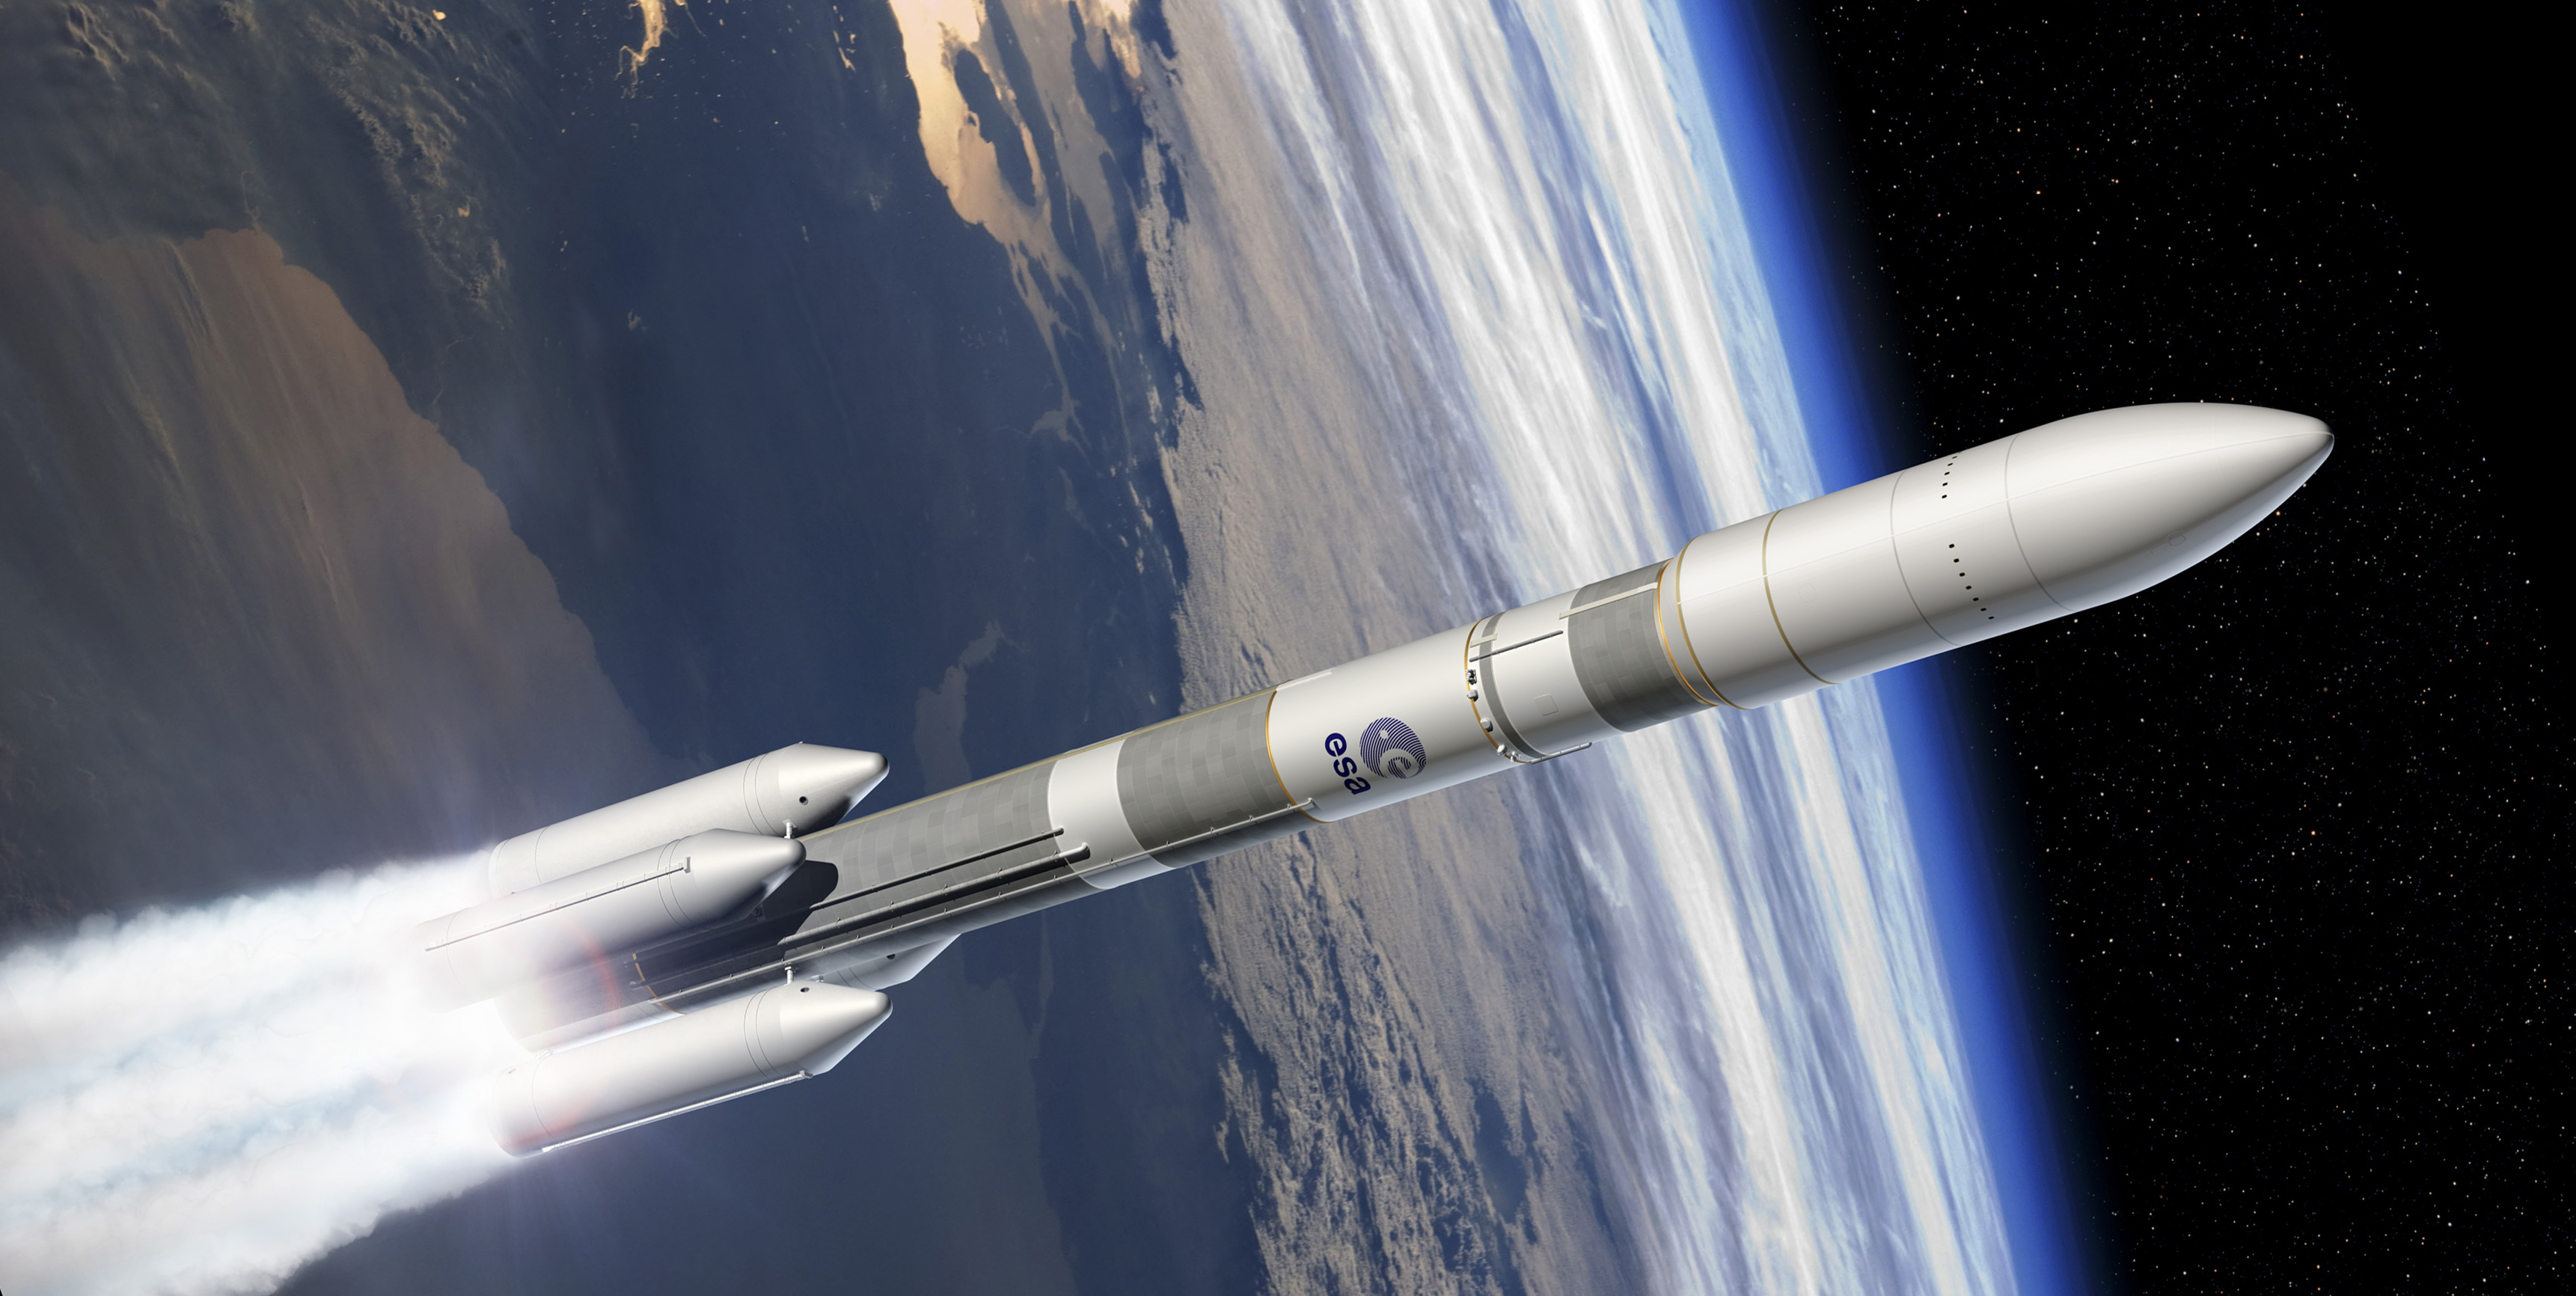 Ariane 6: Premier lancement à Kourou le 16 juillet 2020 selon Arianespace